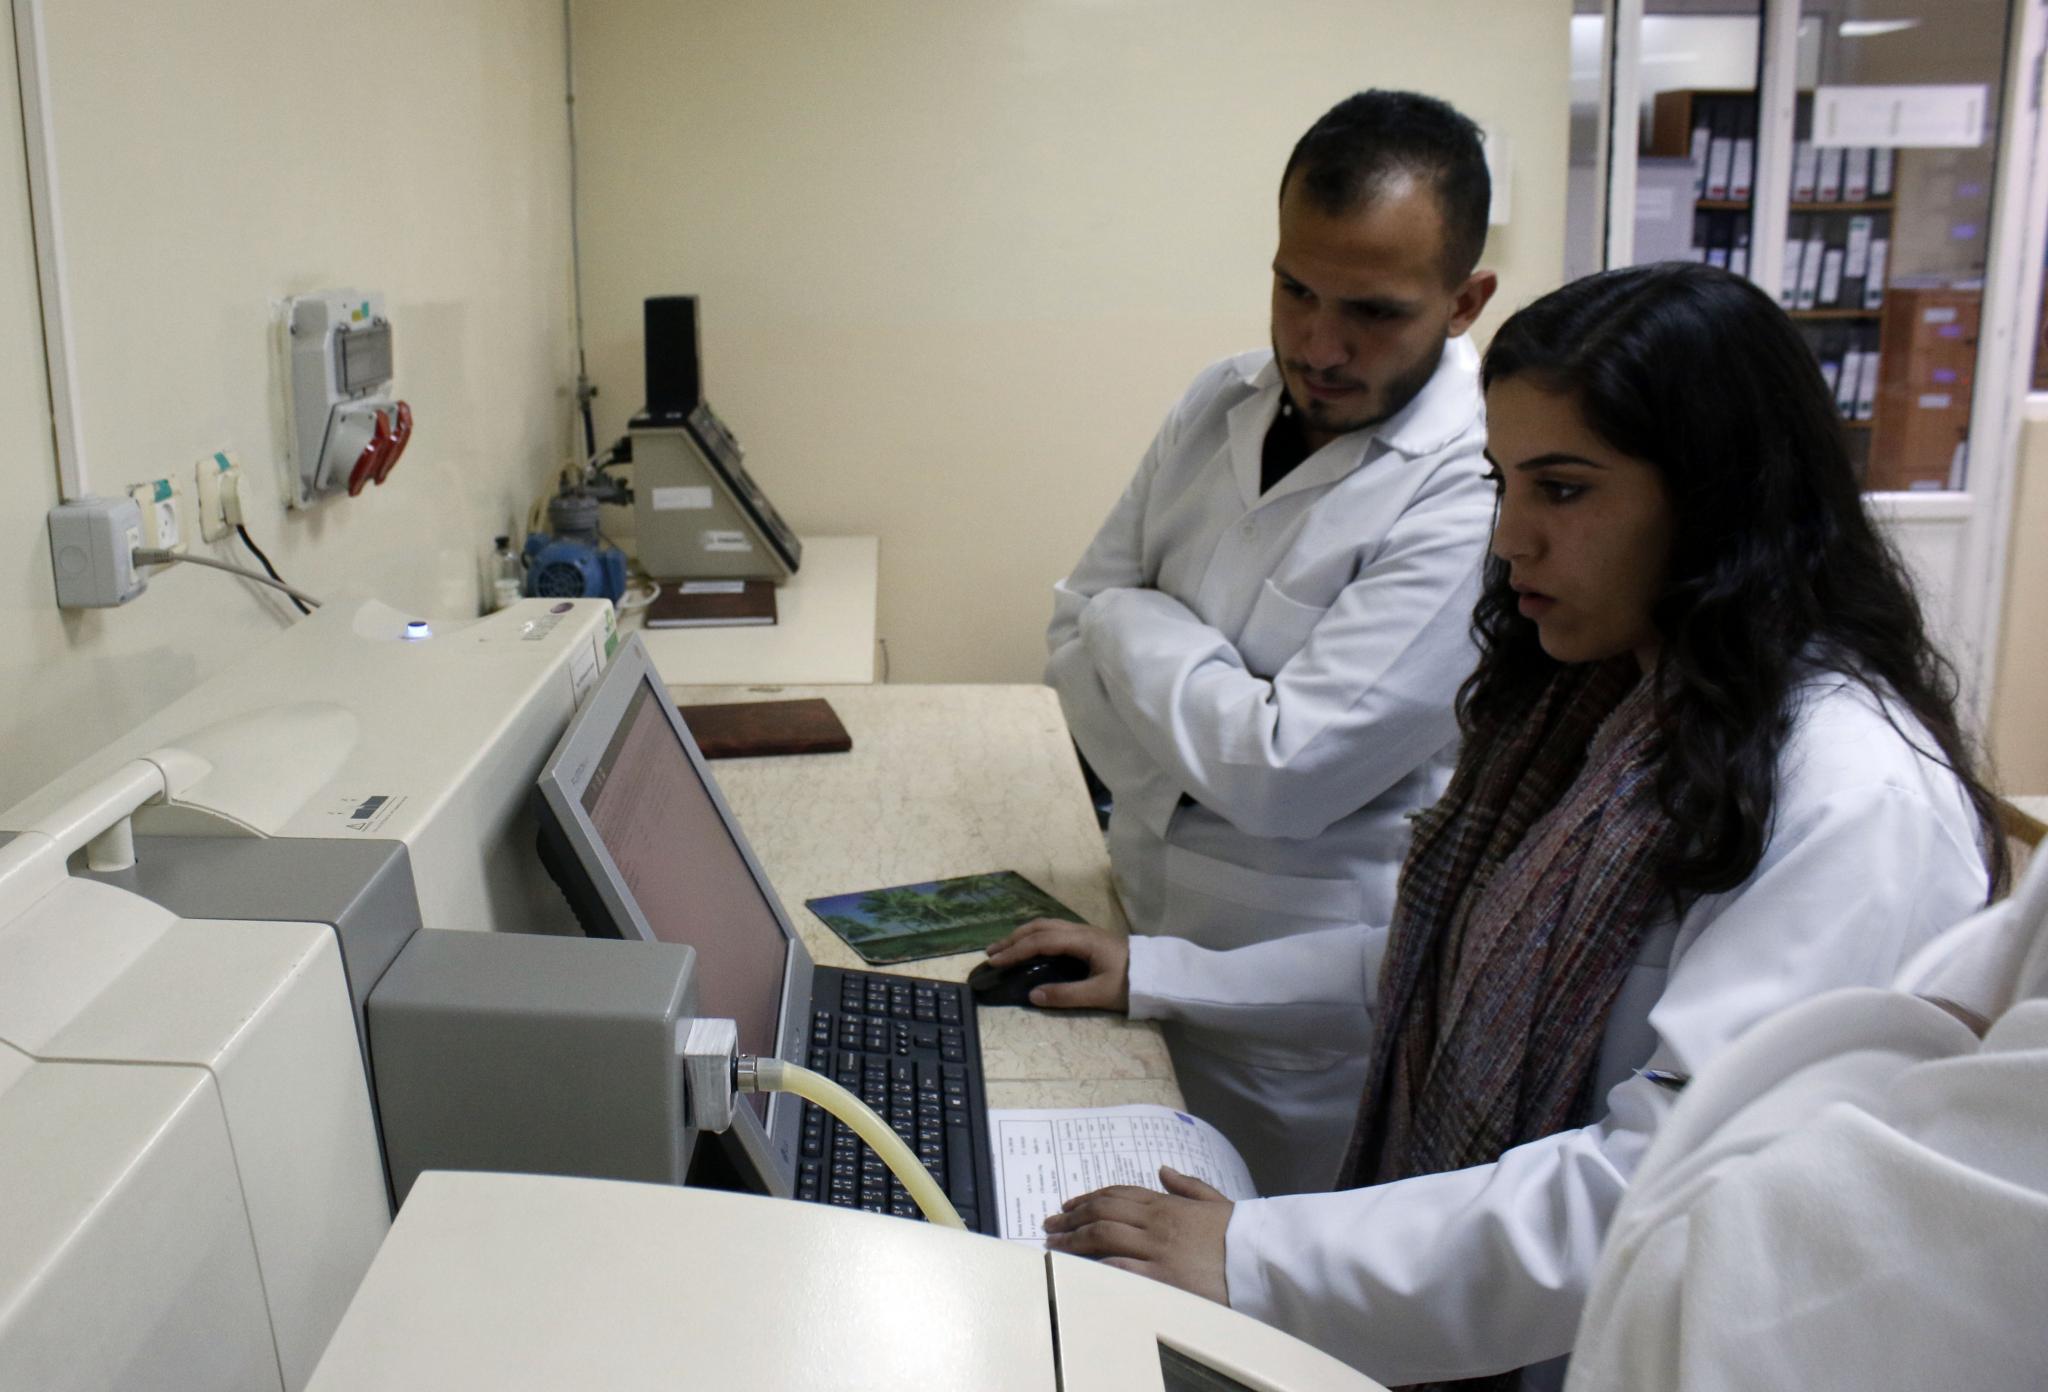 طلبة الصيدلة في الجامعة العربية الامريكية في زيارة لشركة القدس للمستحضرات الطبية برام الله